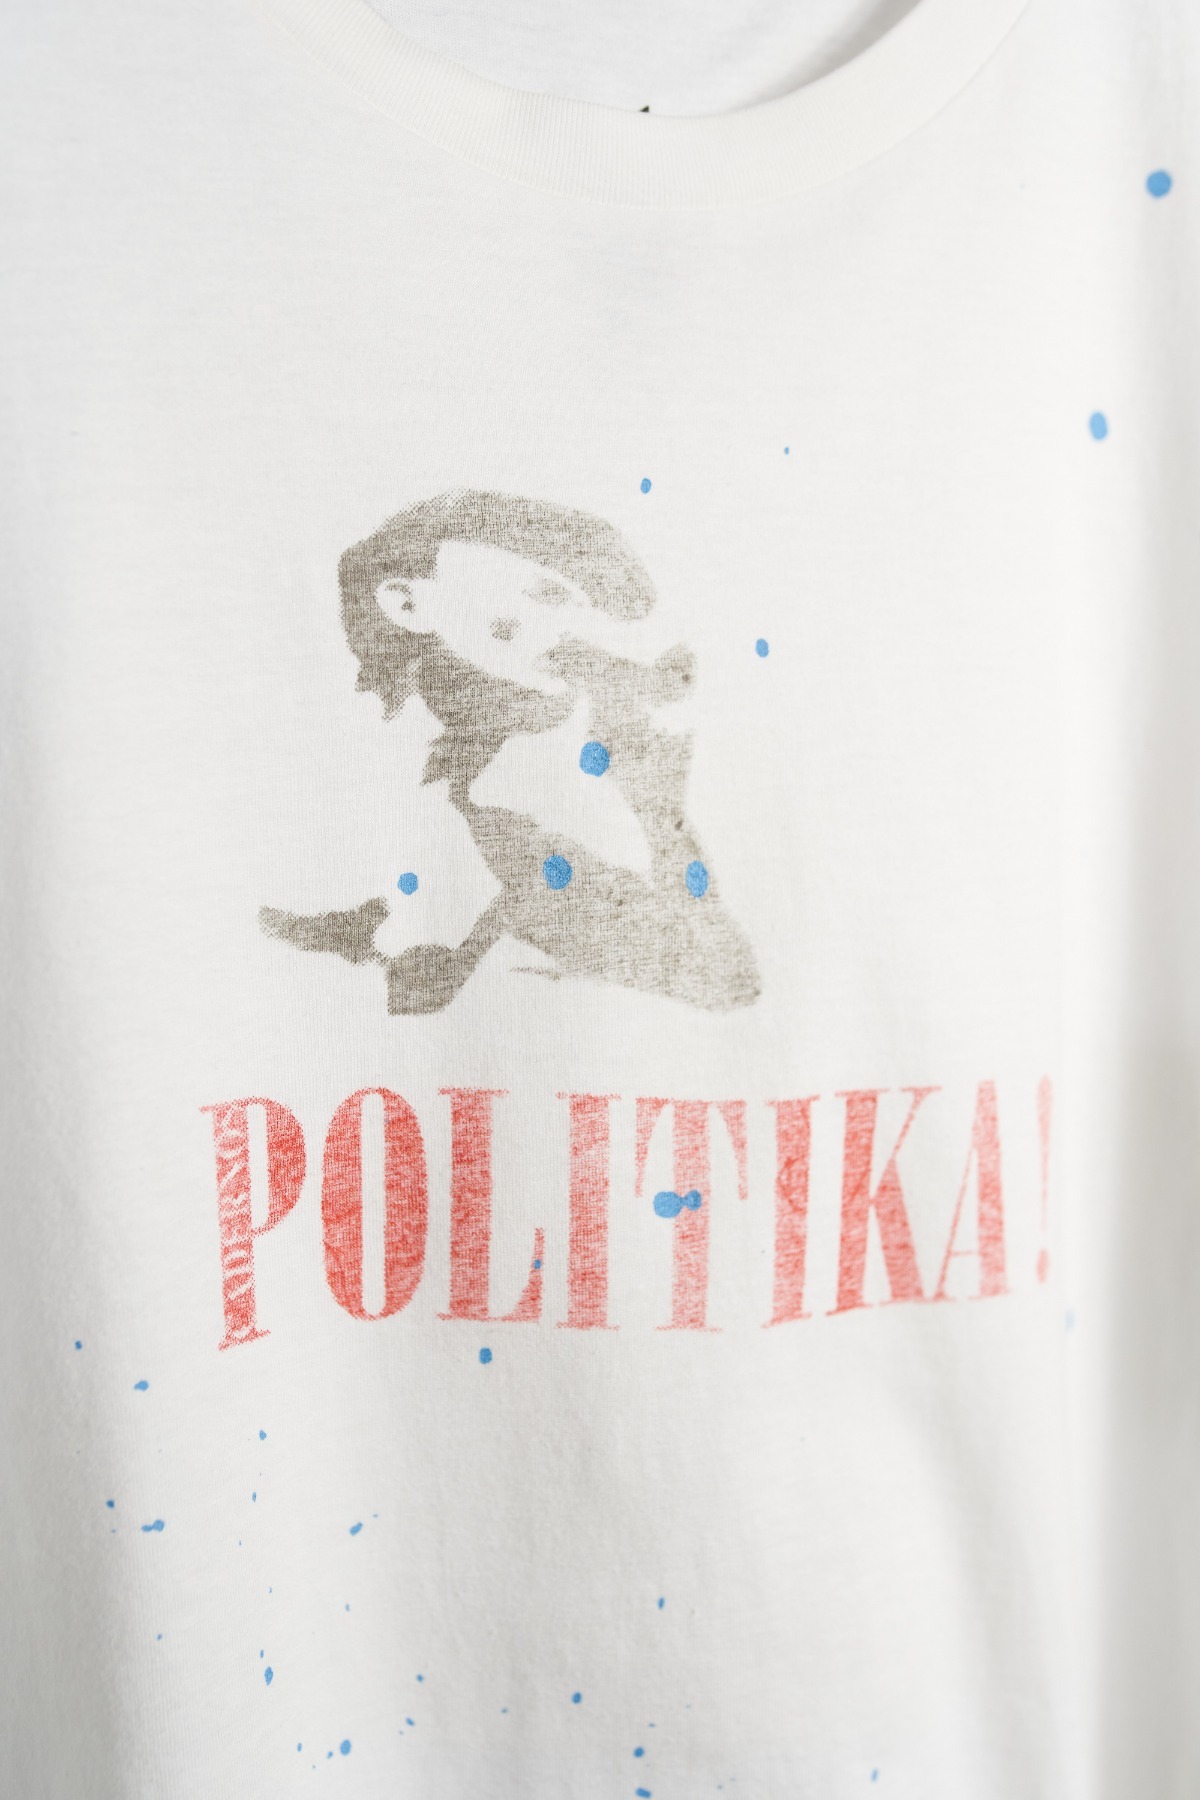 POLITIKA by Tobias Rehberger 2